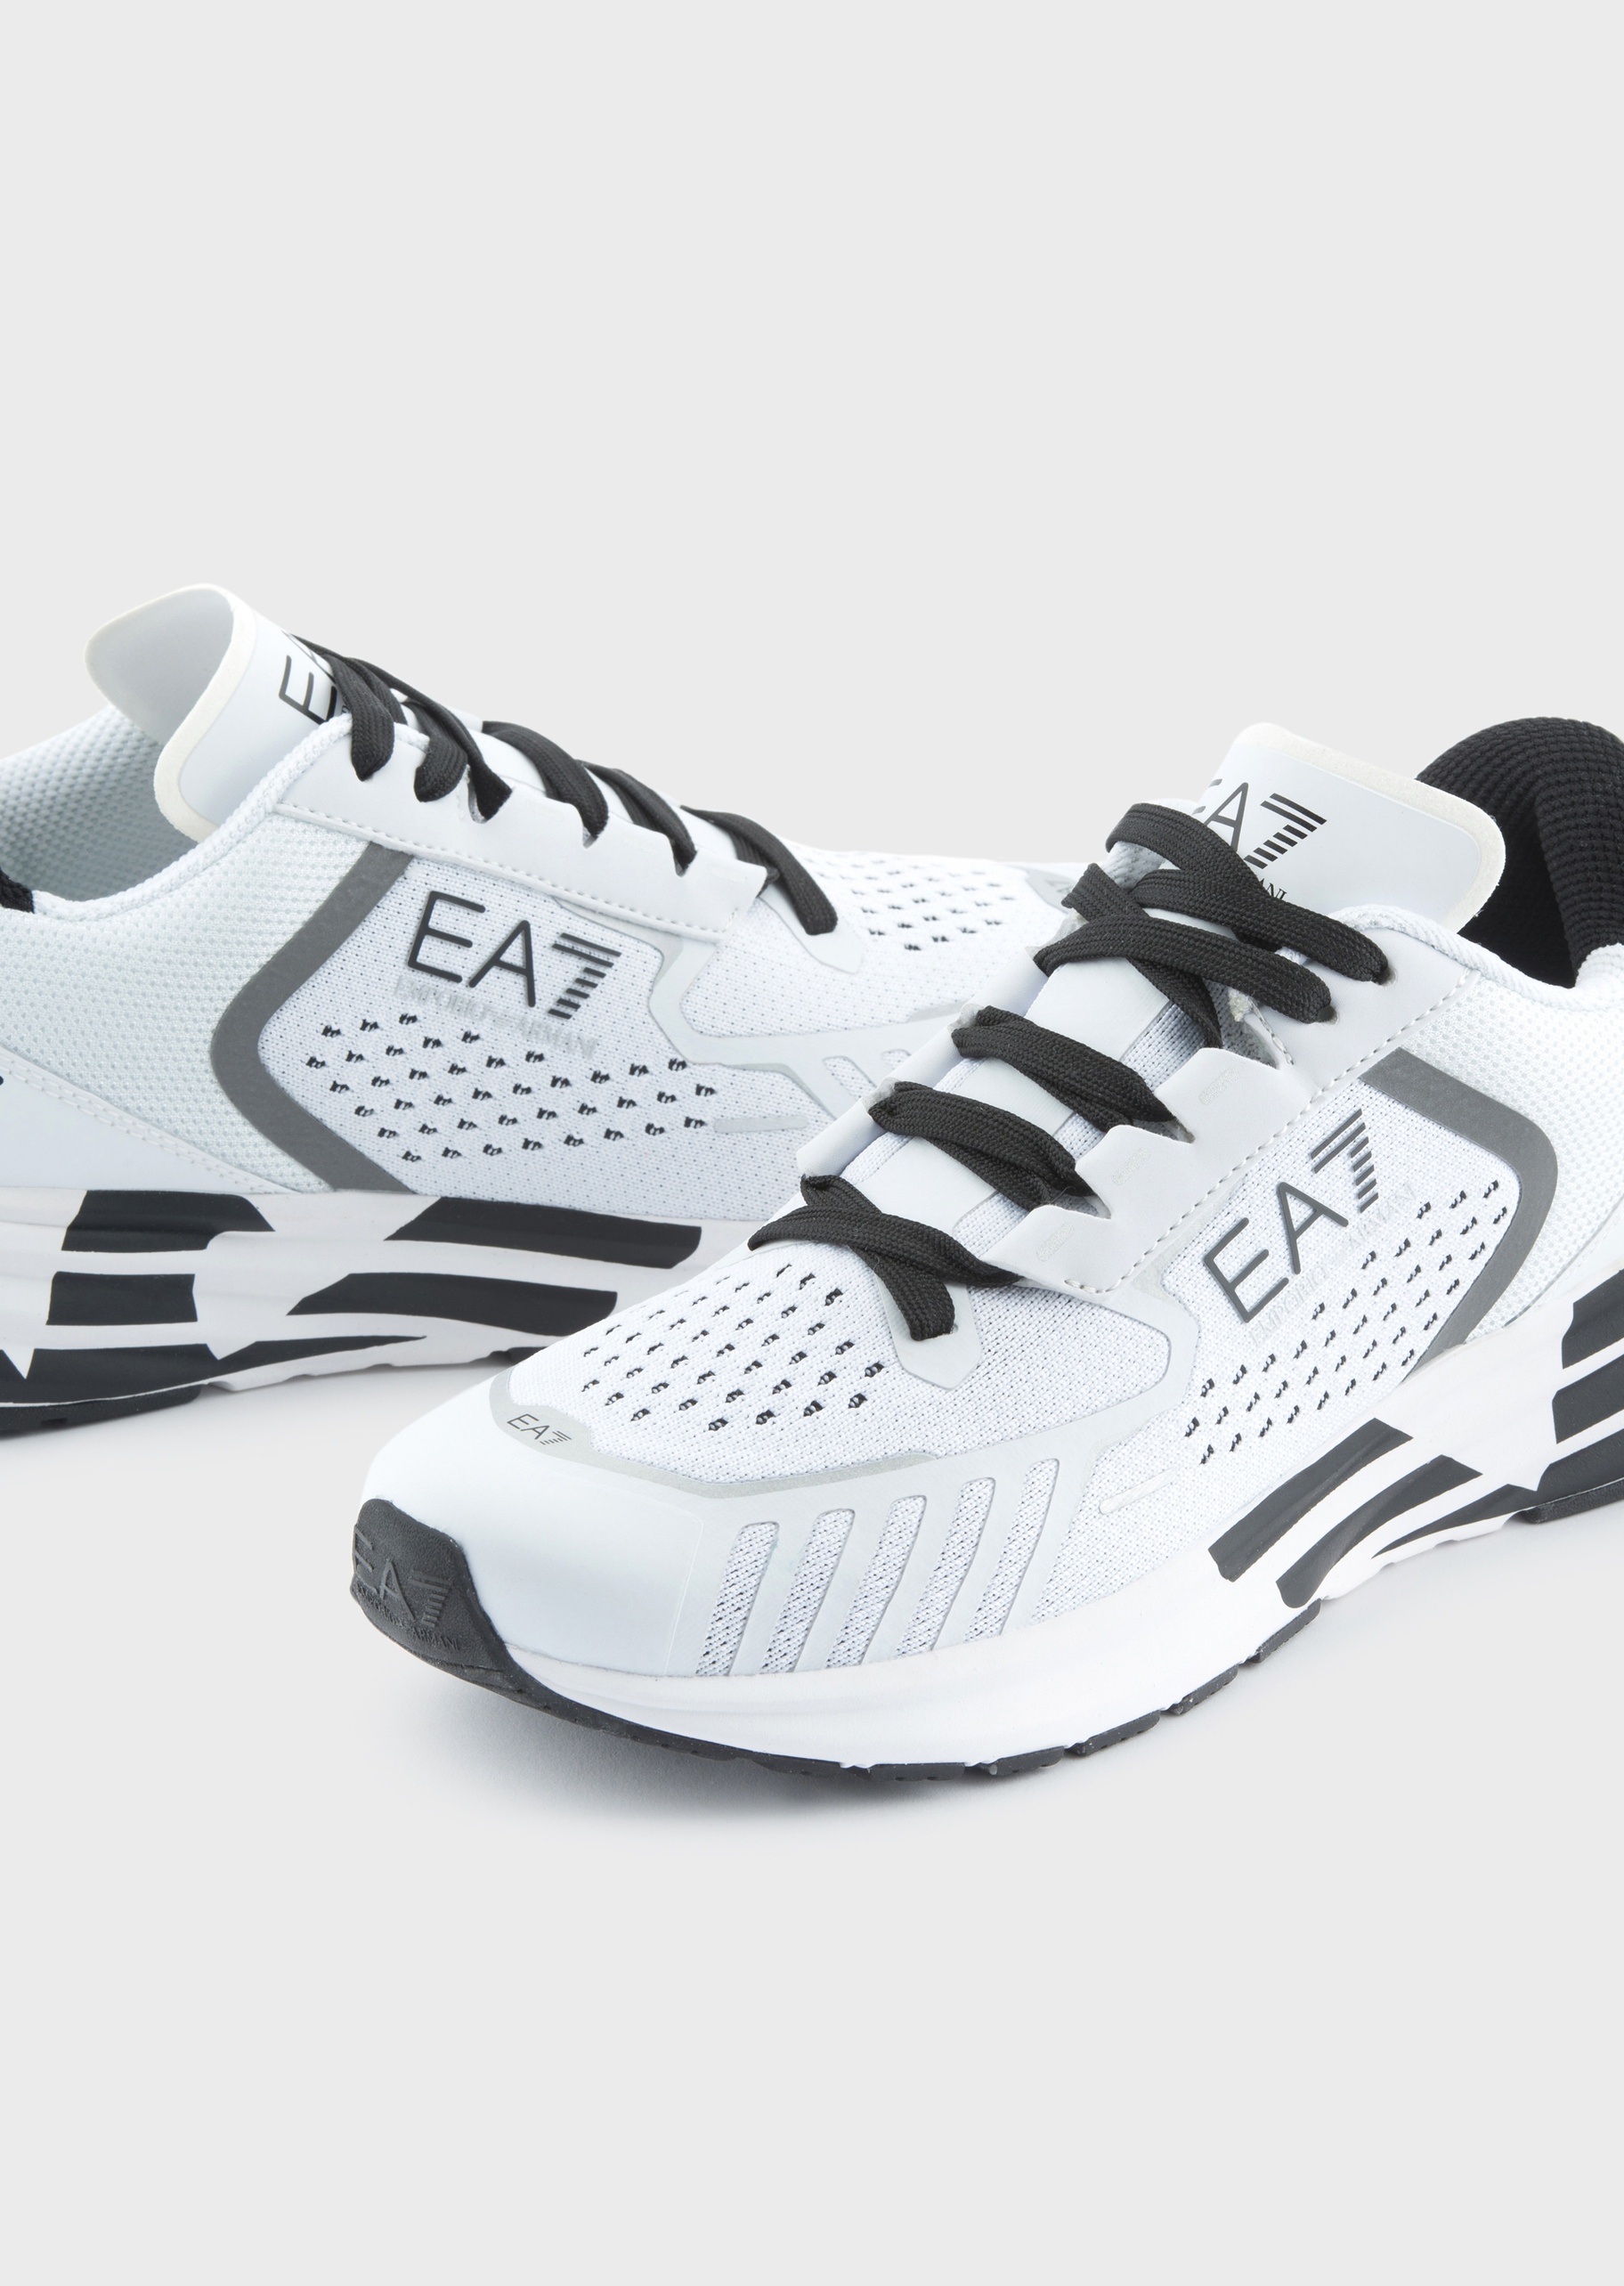 EA7 男女同款CRUSHER系带低帮跑步运动鞋